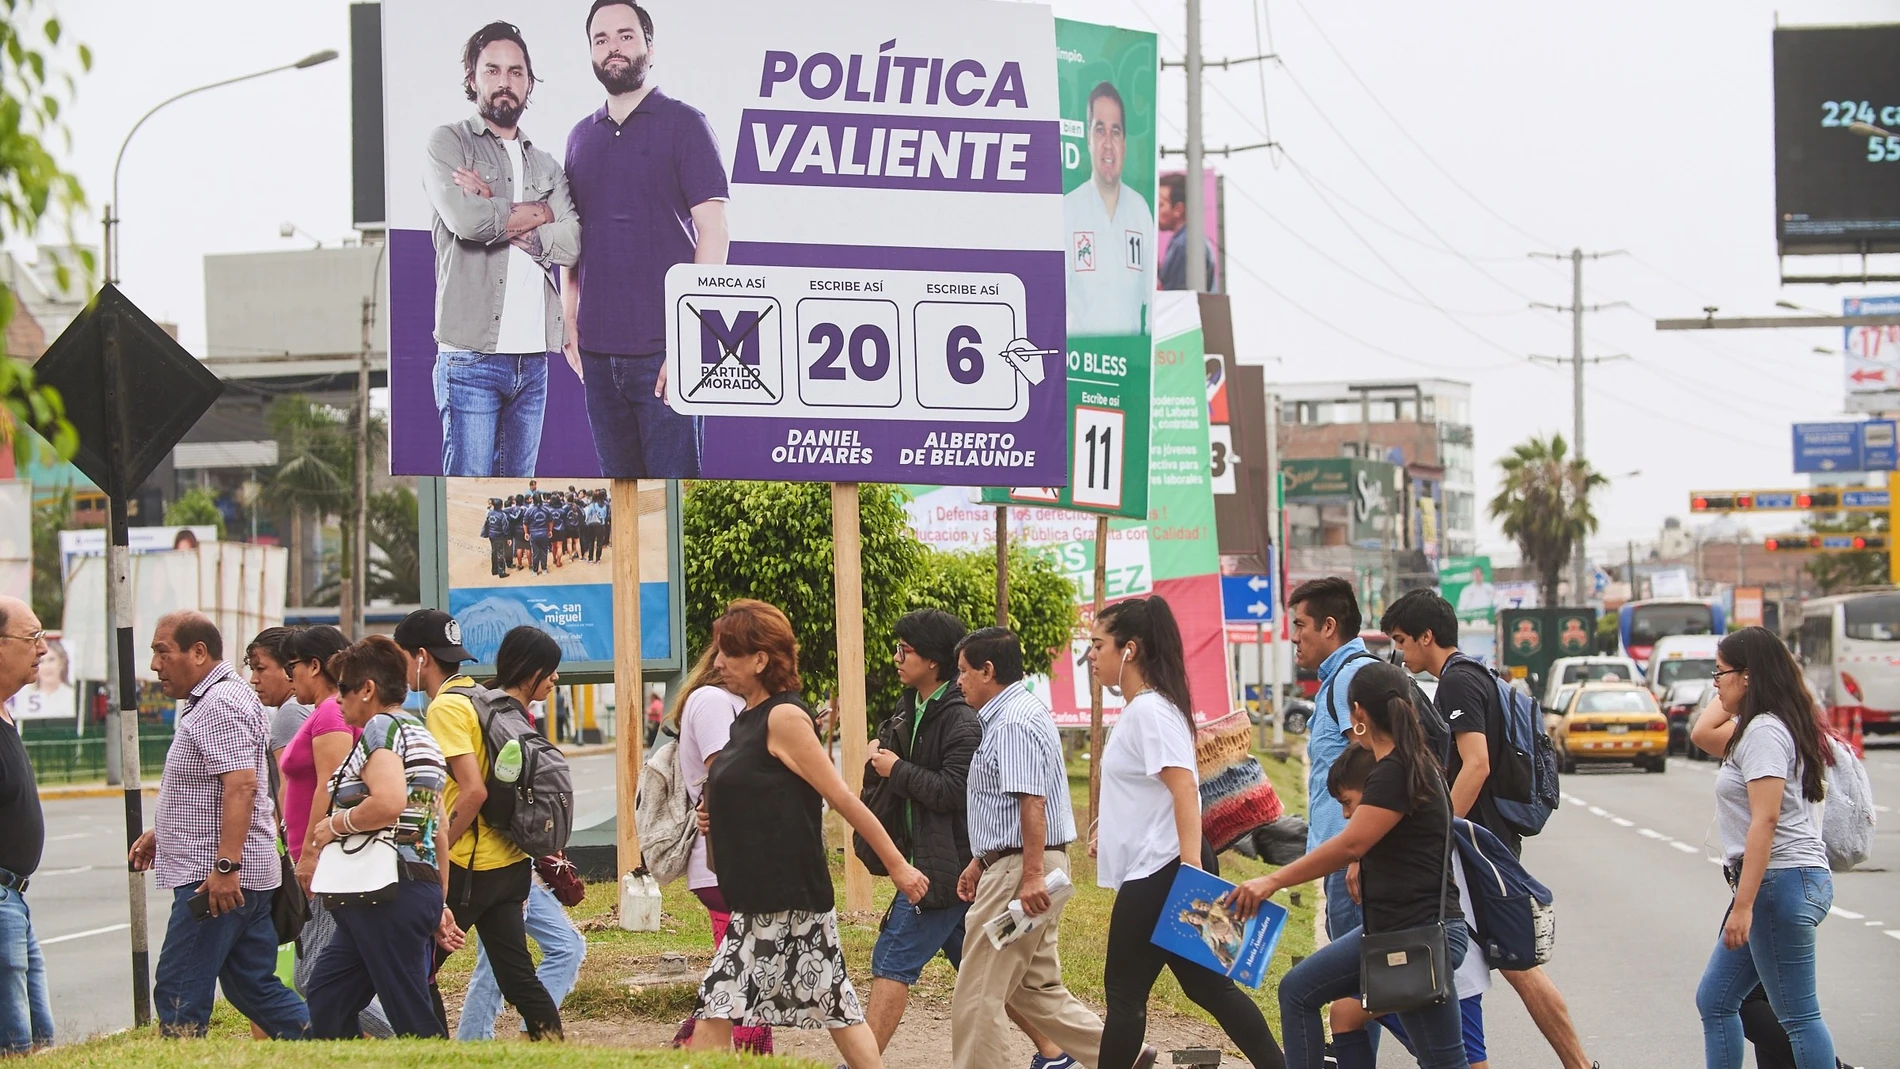 Propaganda electoral de los candidatos al congreso Daniel Olivares (i) y Alberto de Belaunde (d), por el Partido Morado en Lima